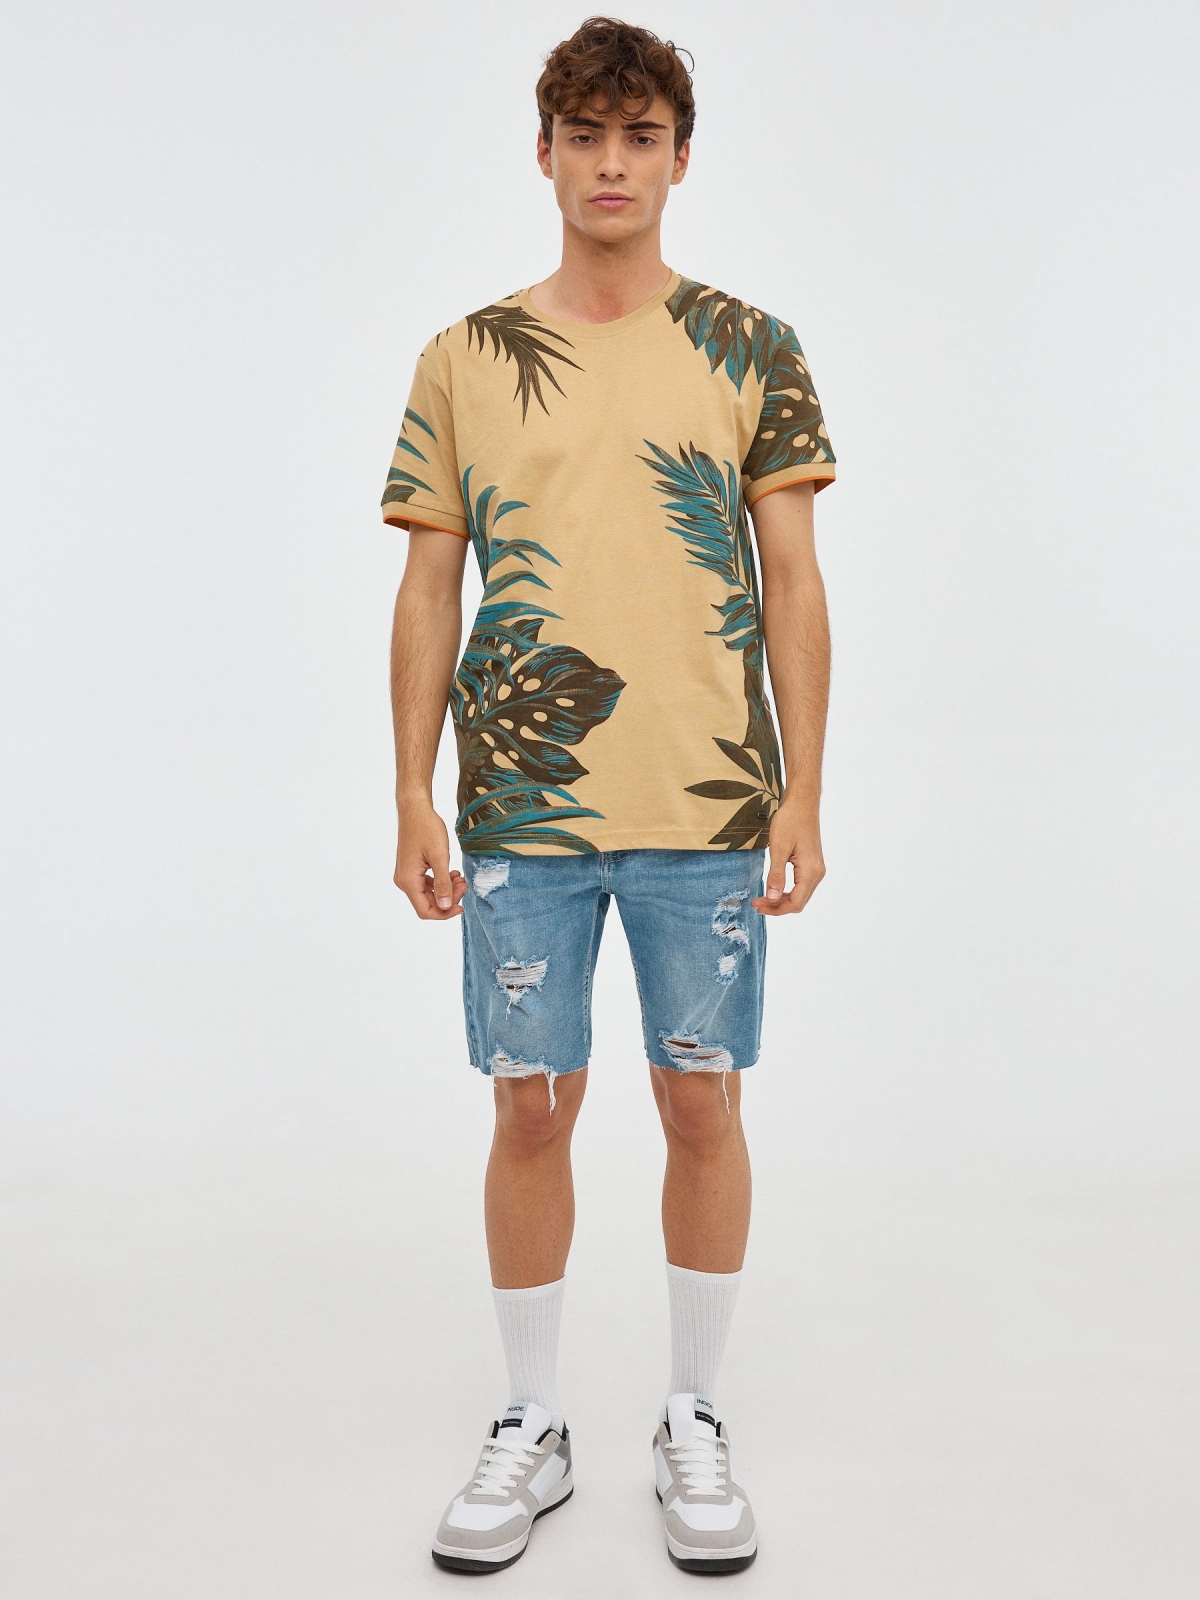 T-shirt de folhas tropicais marrom terra vista geral frontal